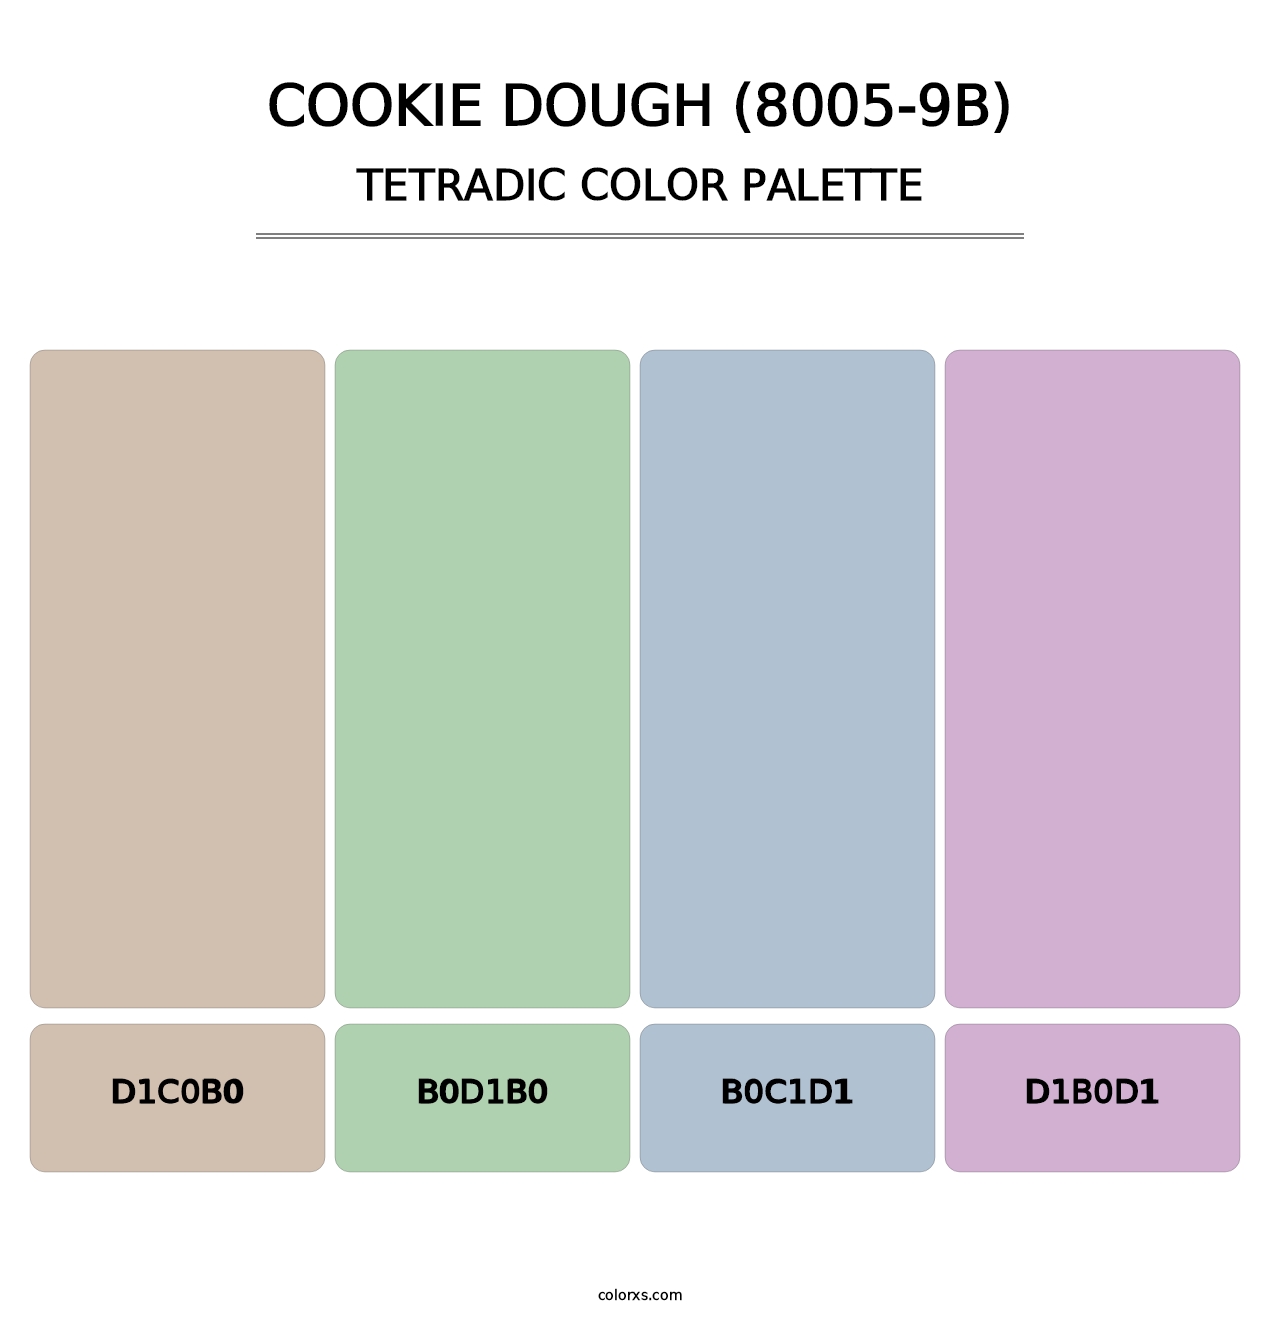 Cookie Dough (8005-9B) - Tetradic Color Palette